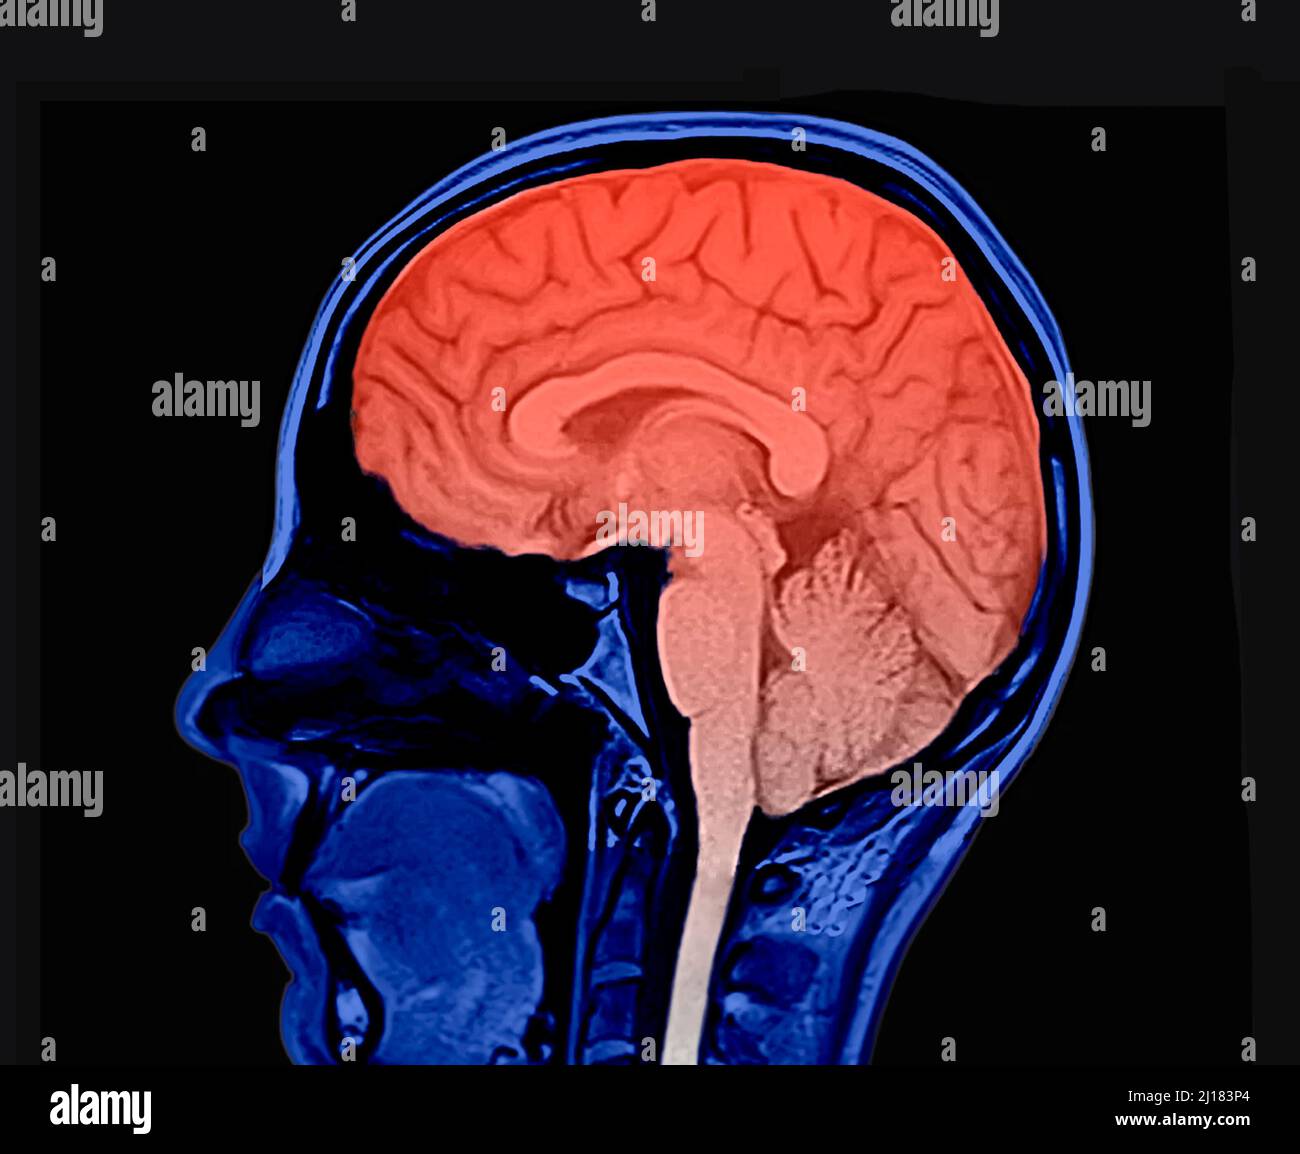 Kolorierte Version eines Magnetresonanzbildes des menschlichen Gehirns. Sagittale Ansicht. Zeigt den Kopf, den Hippocampus, das Zerebellum und das Rückenmark. Achtung. Stockfoto